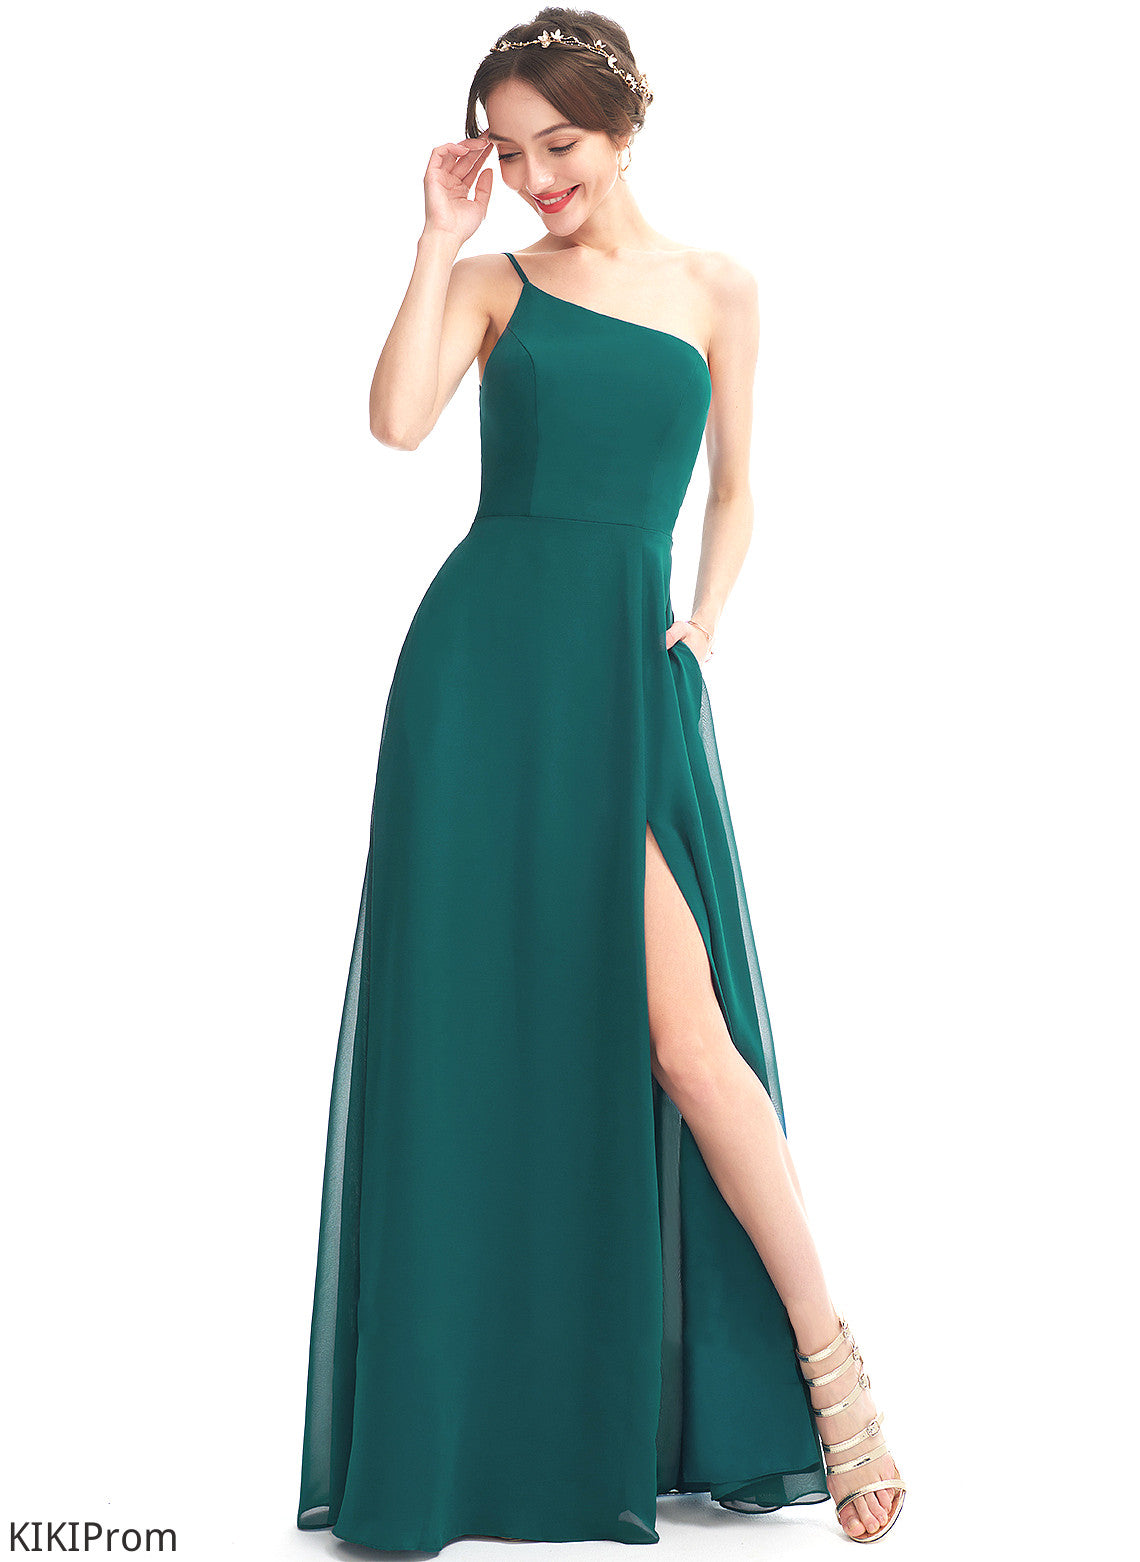 One-Shoulder SplitFront Pockets Embellishment A-Line Length Silhouette Neckline Floor-Length Fabric Barbara Bridesmaid Dresses